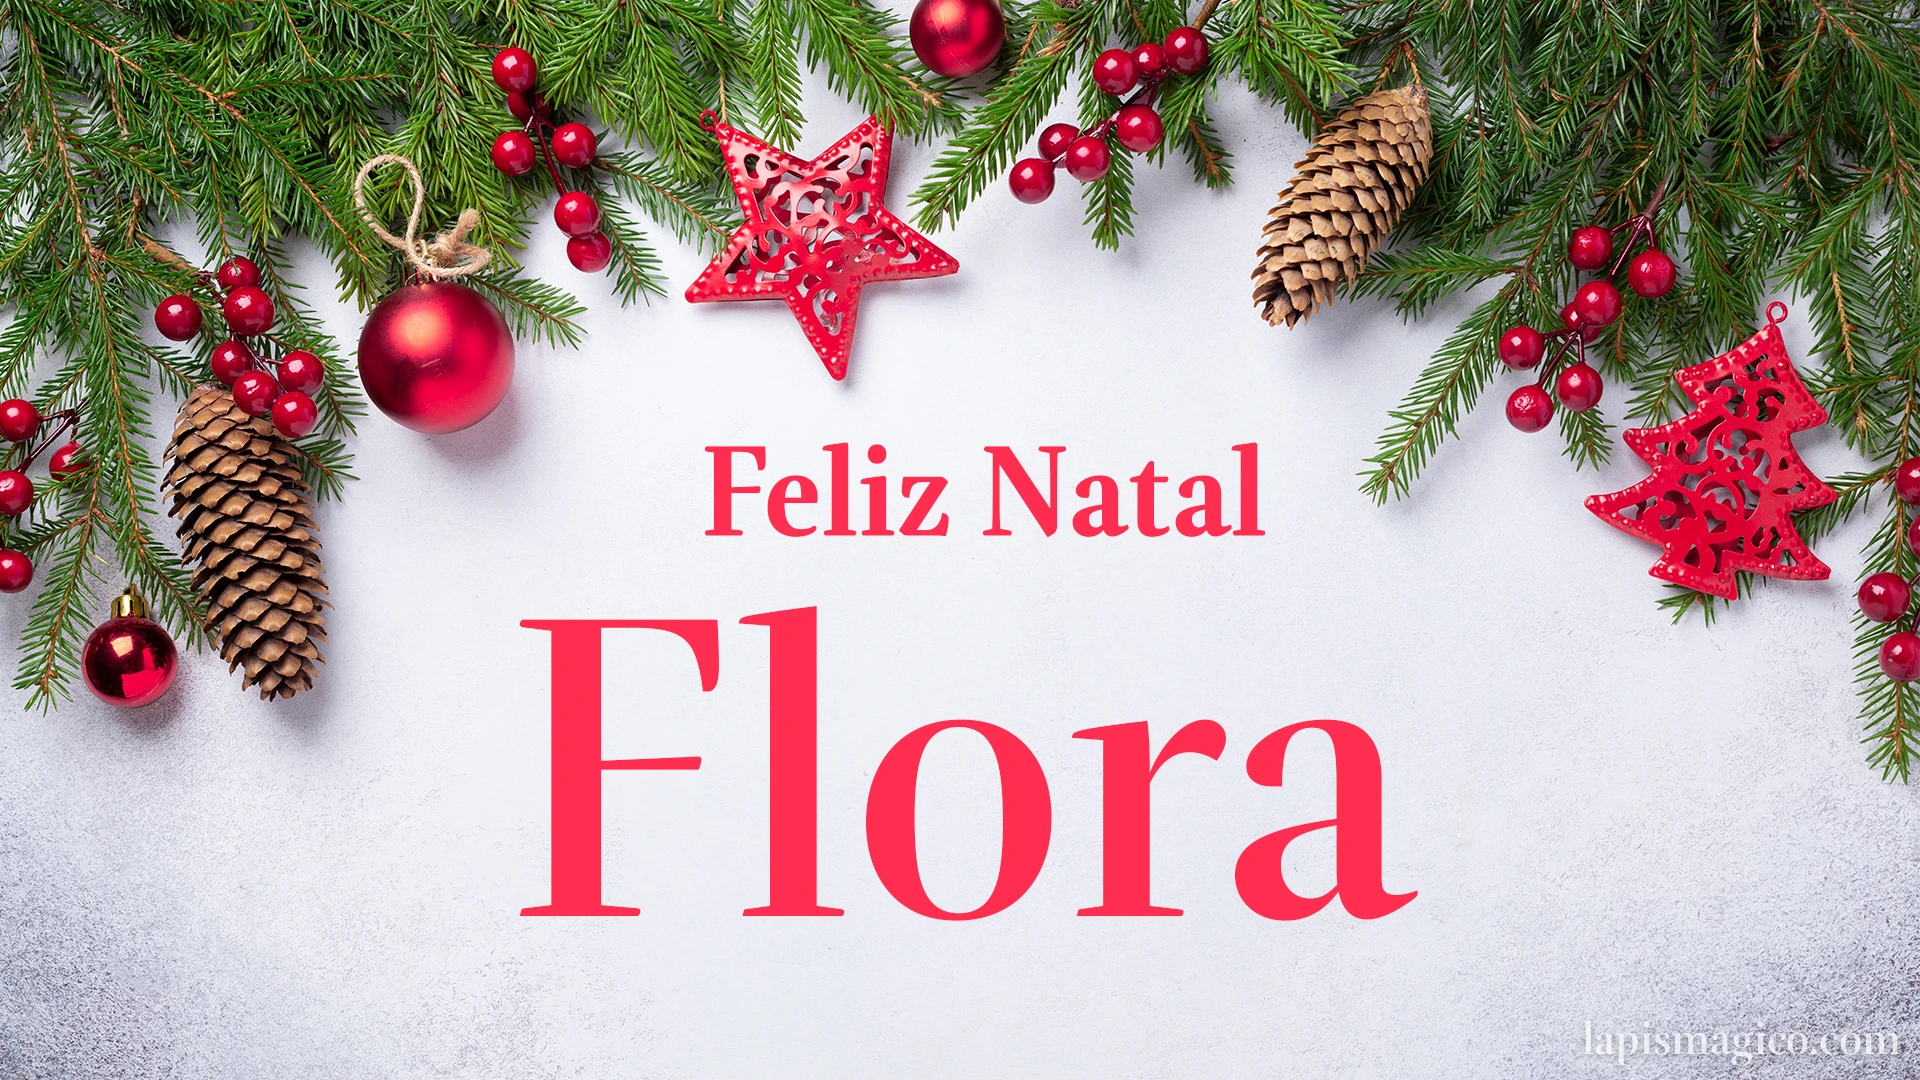 Oh Flora, cinco postais de Feliz Natal Postal com o teu nome